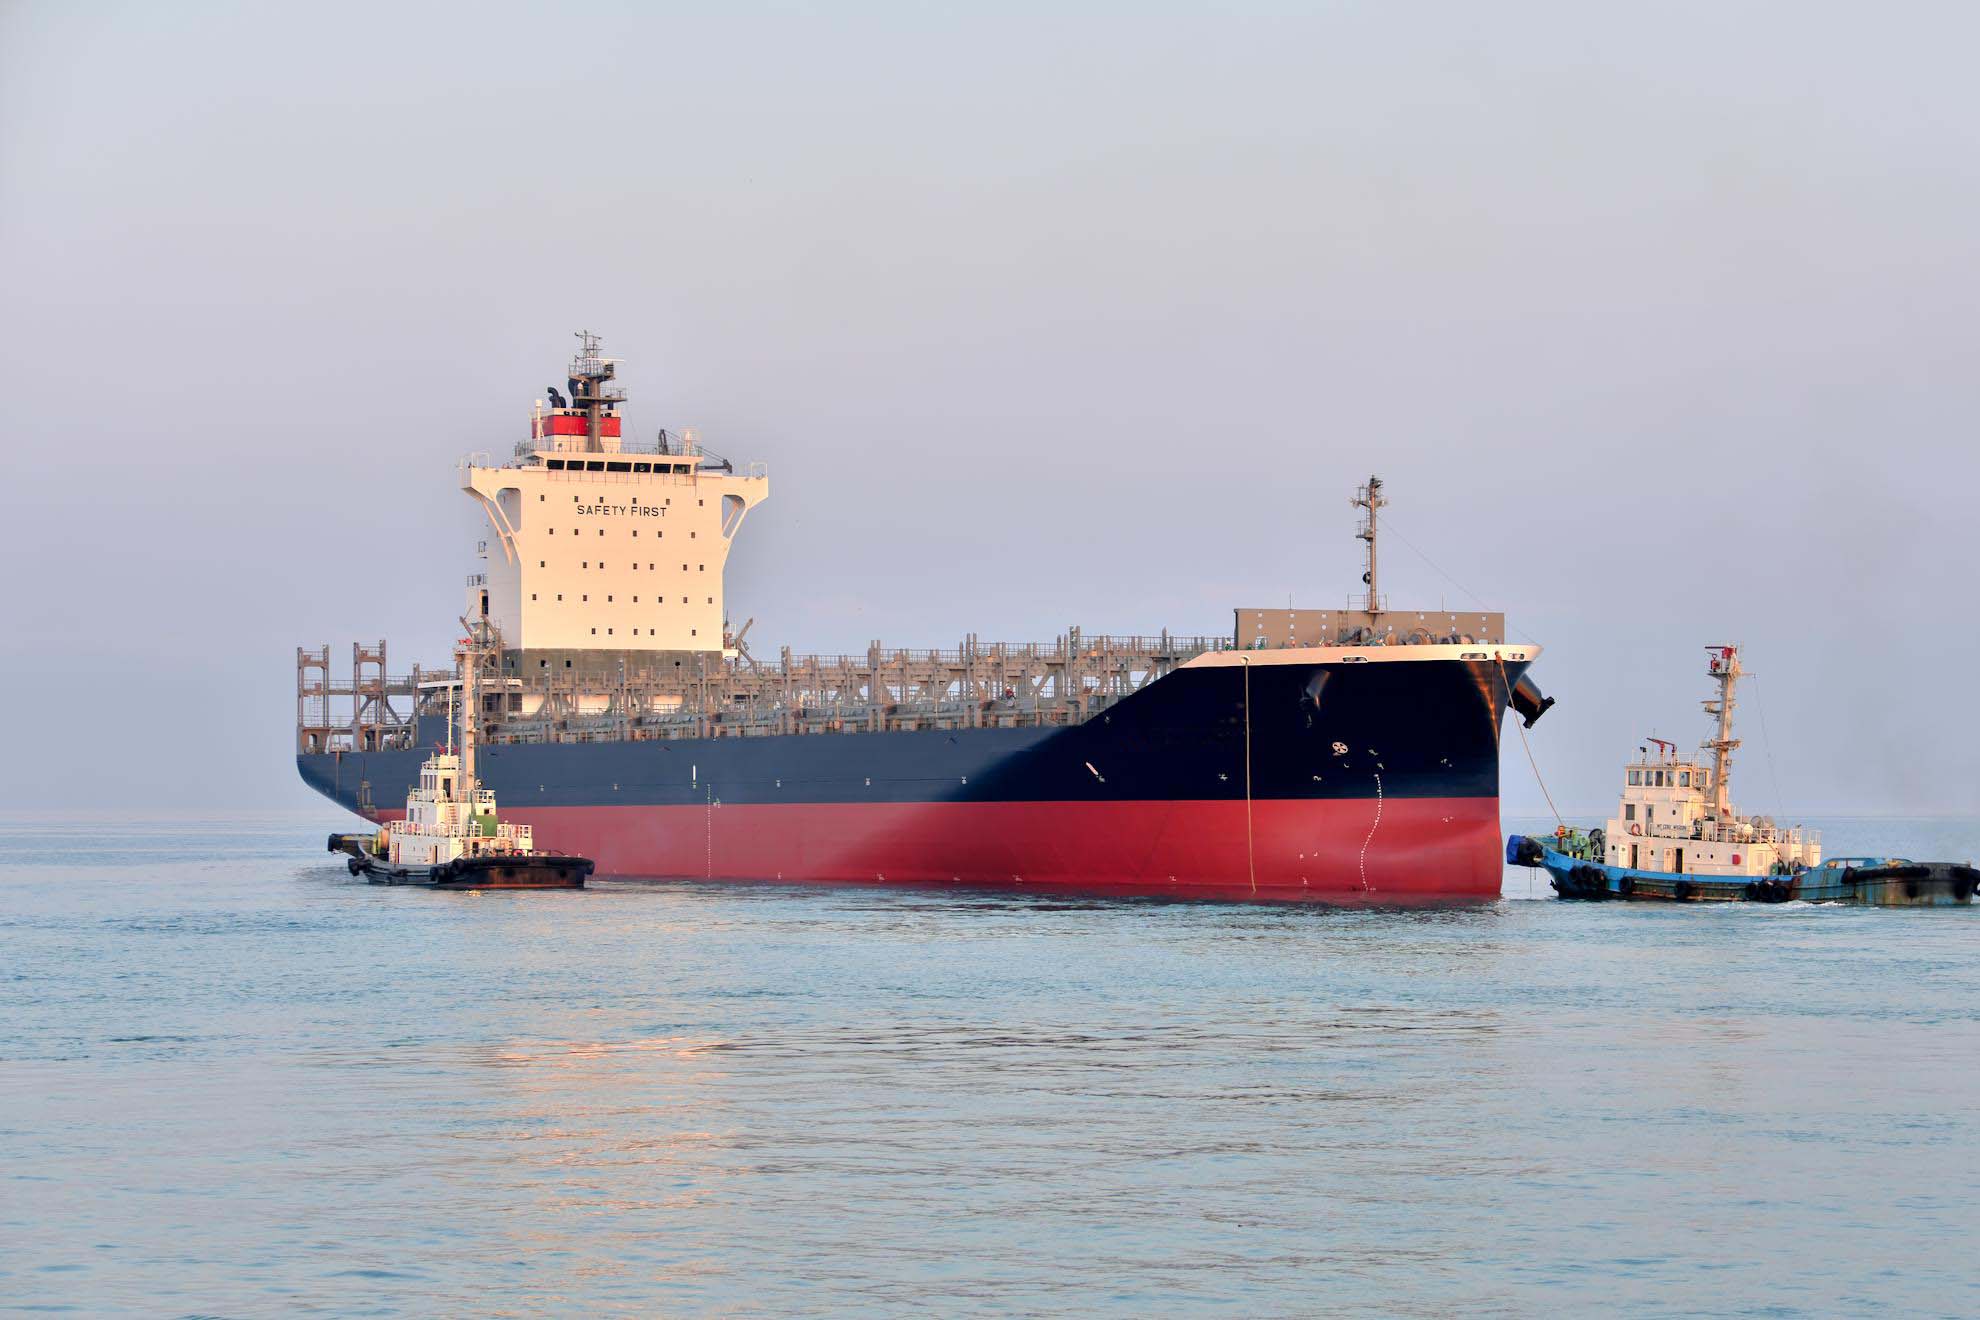 常石造船的新船型1900TEU型集装箱船在菲律宾基地下水
～该船舶是应对东南亚需求的优化支线型集装箱船～